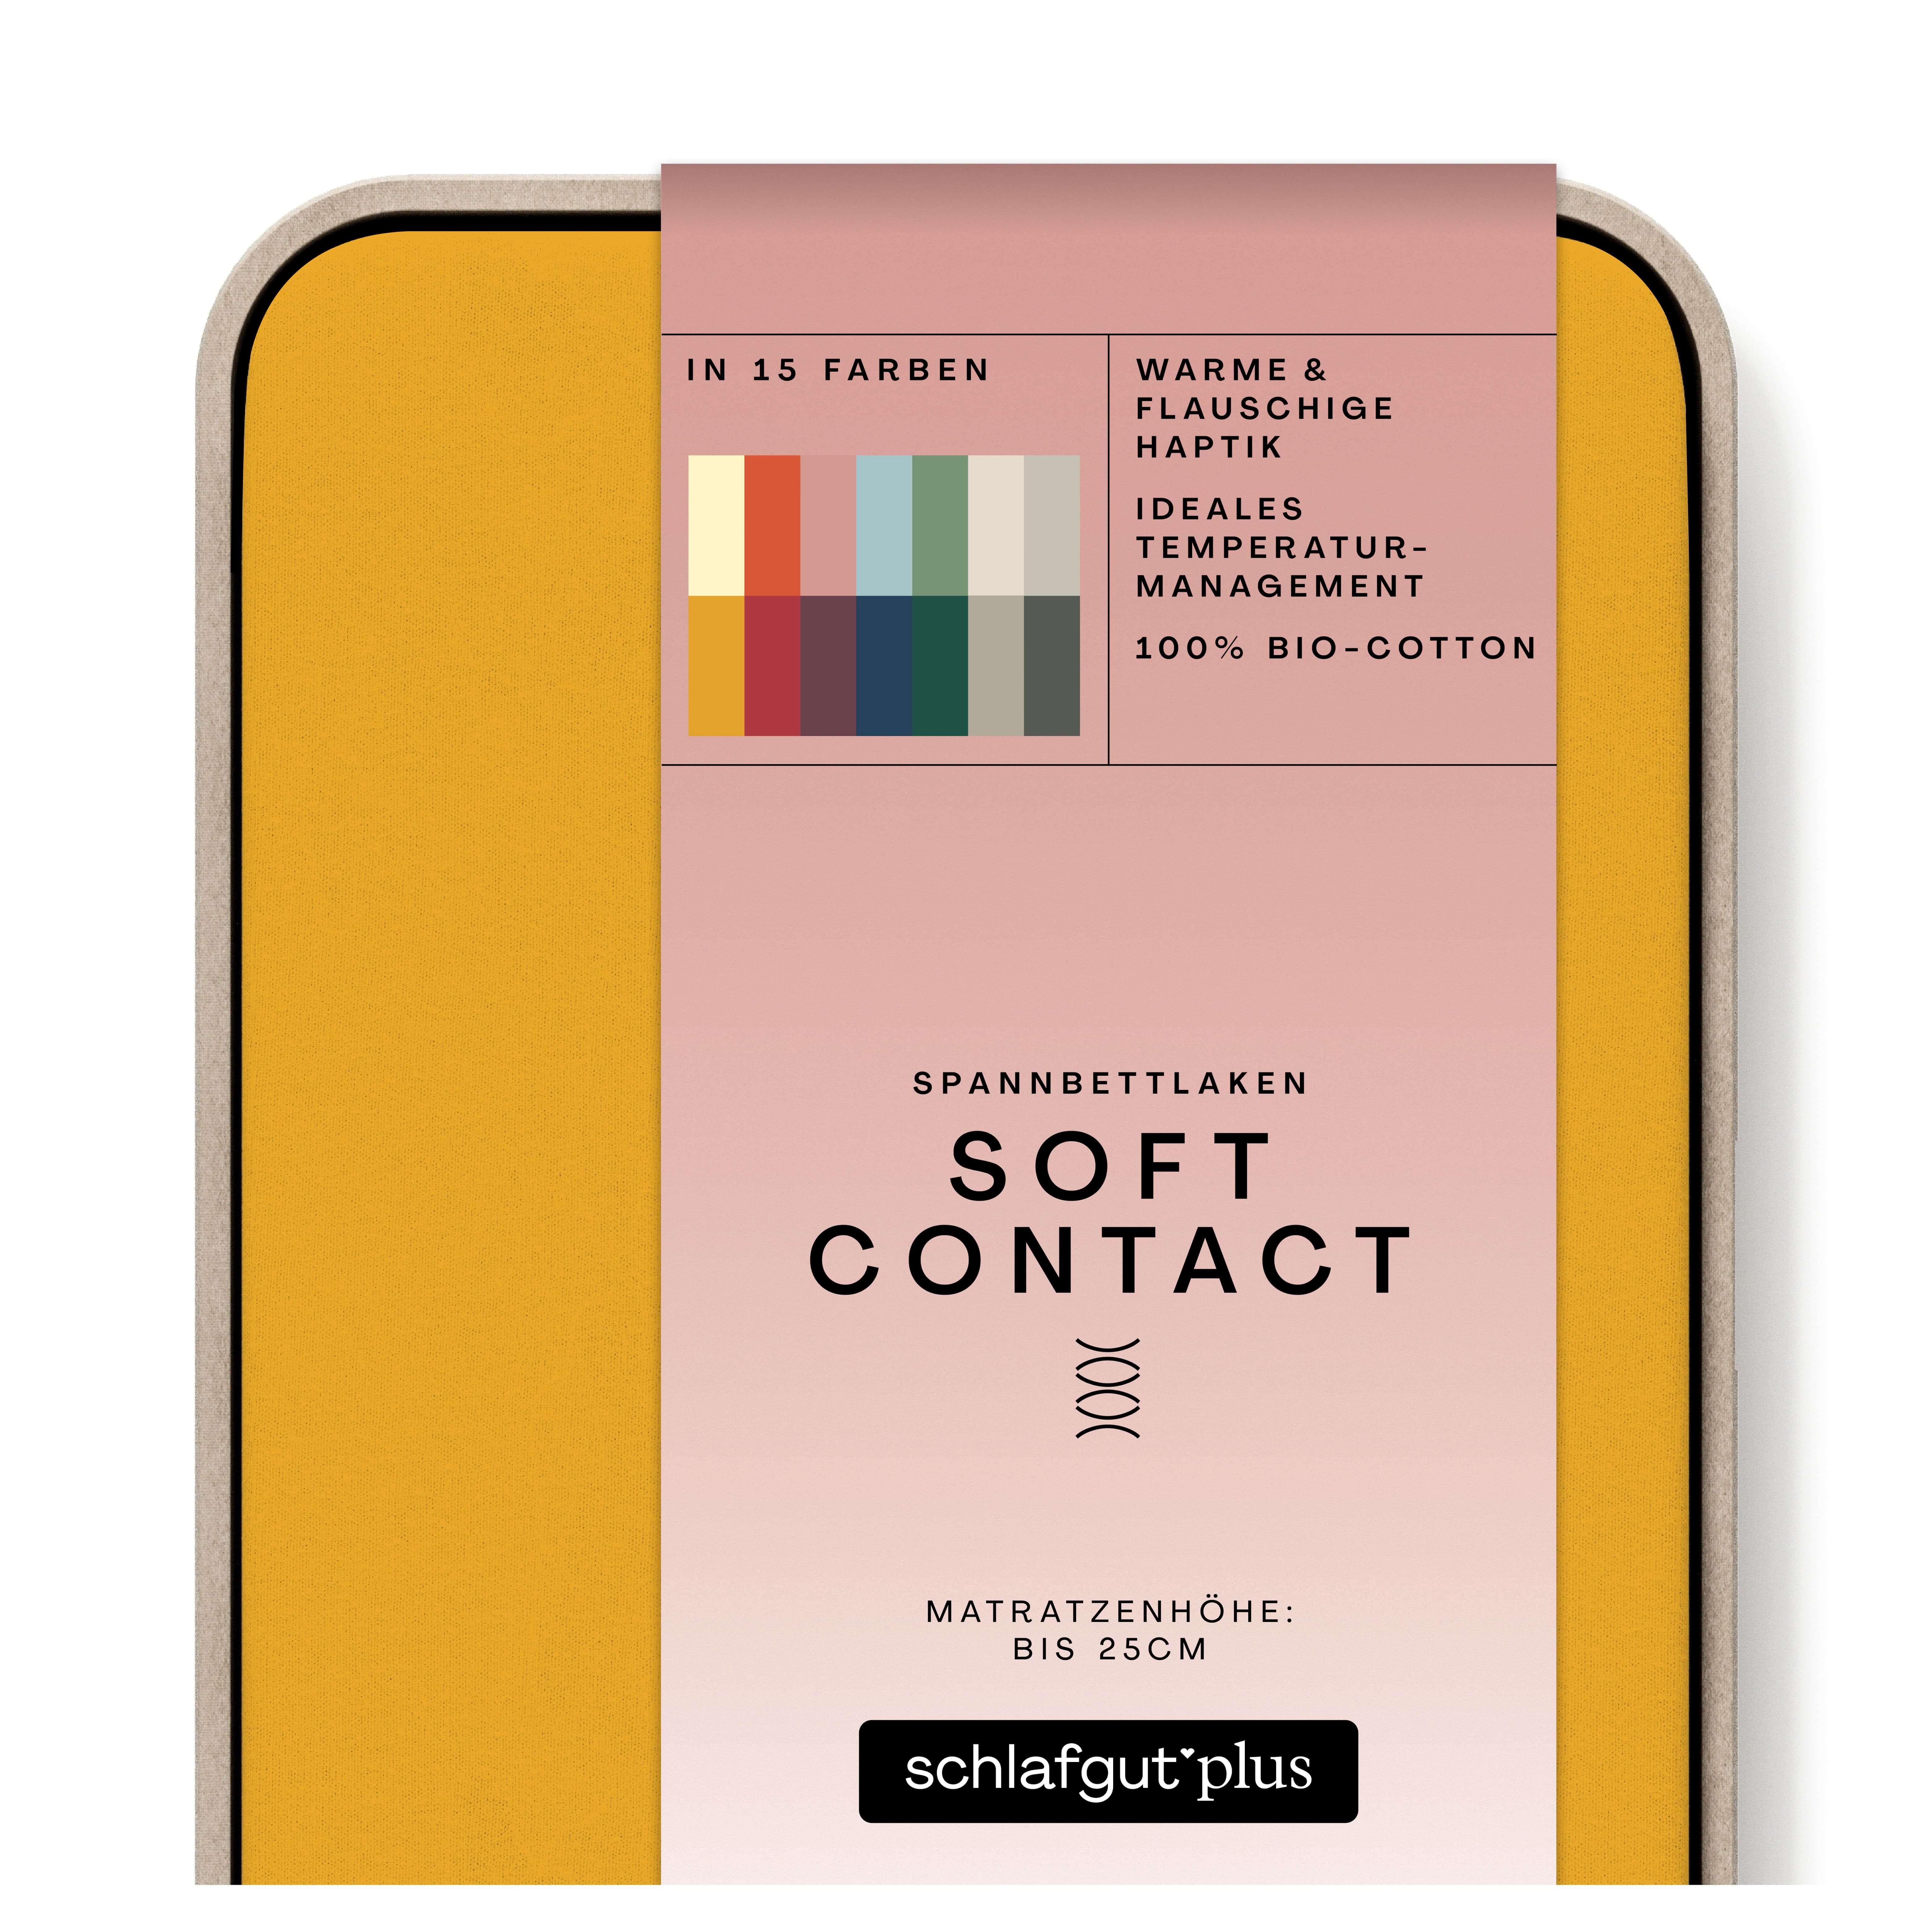 Das Produktbild vom Spannbettlaken der Reihe Soft Contact in Farbe yellow deep von Schlafgut